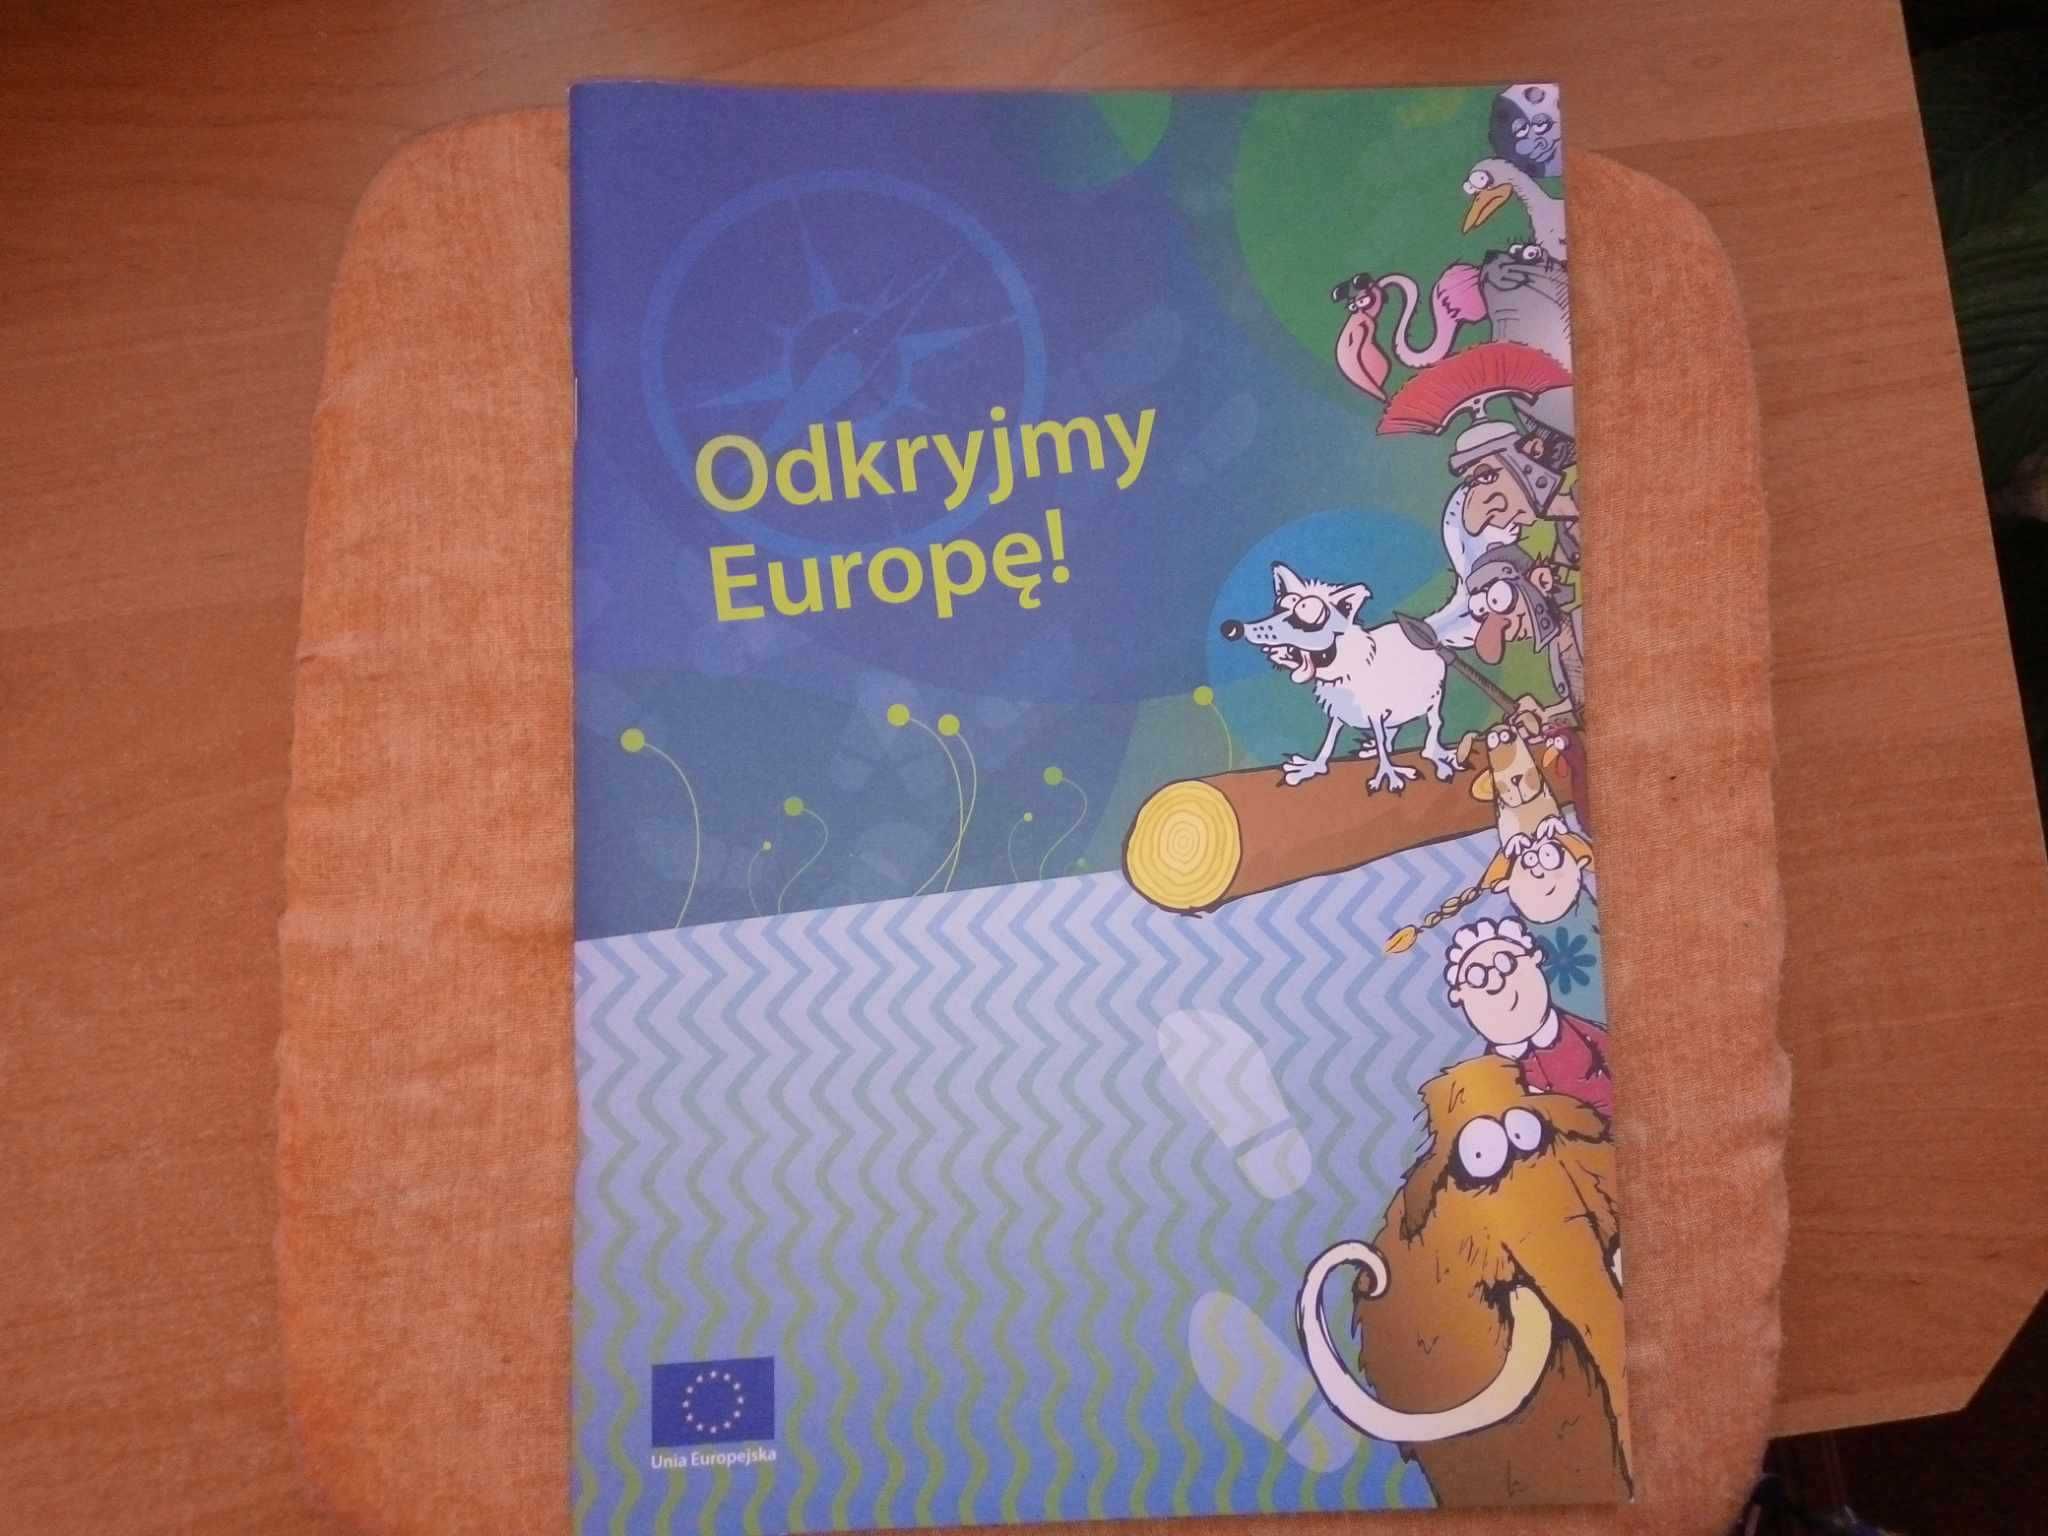 Odkryjmy Europę! Unia Europejska (2020)